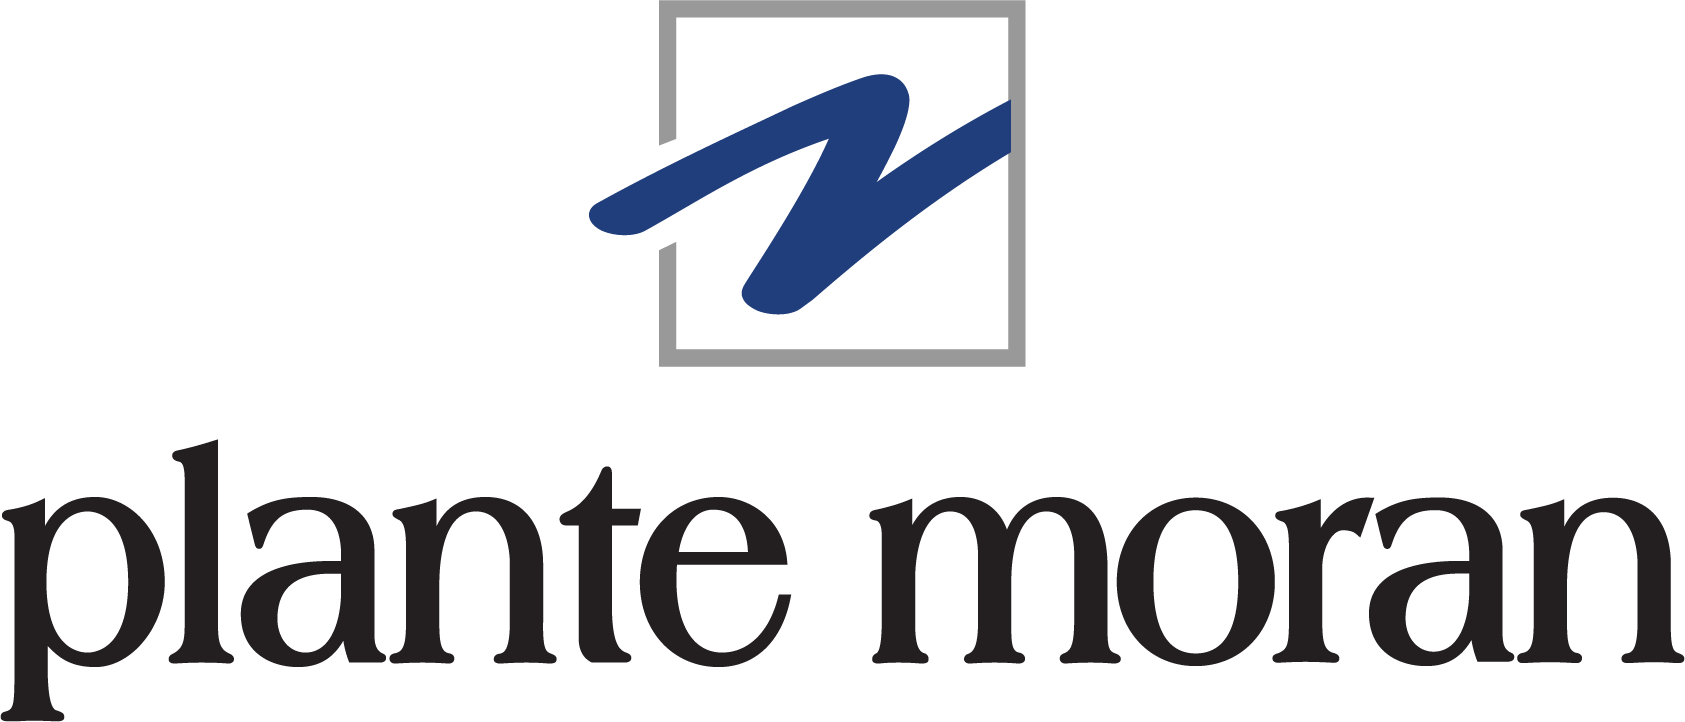 Plante Moran Logo